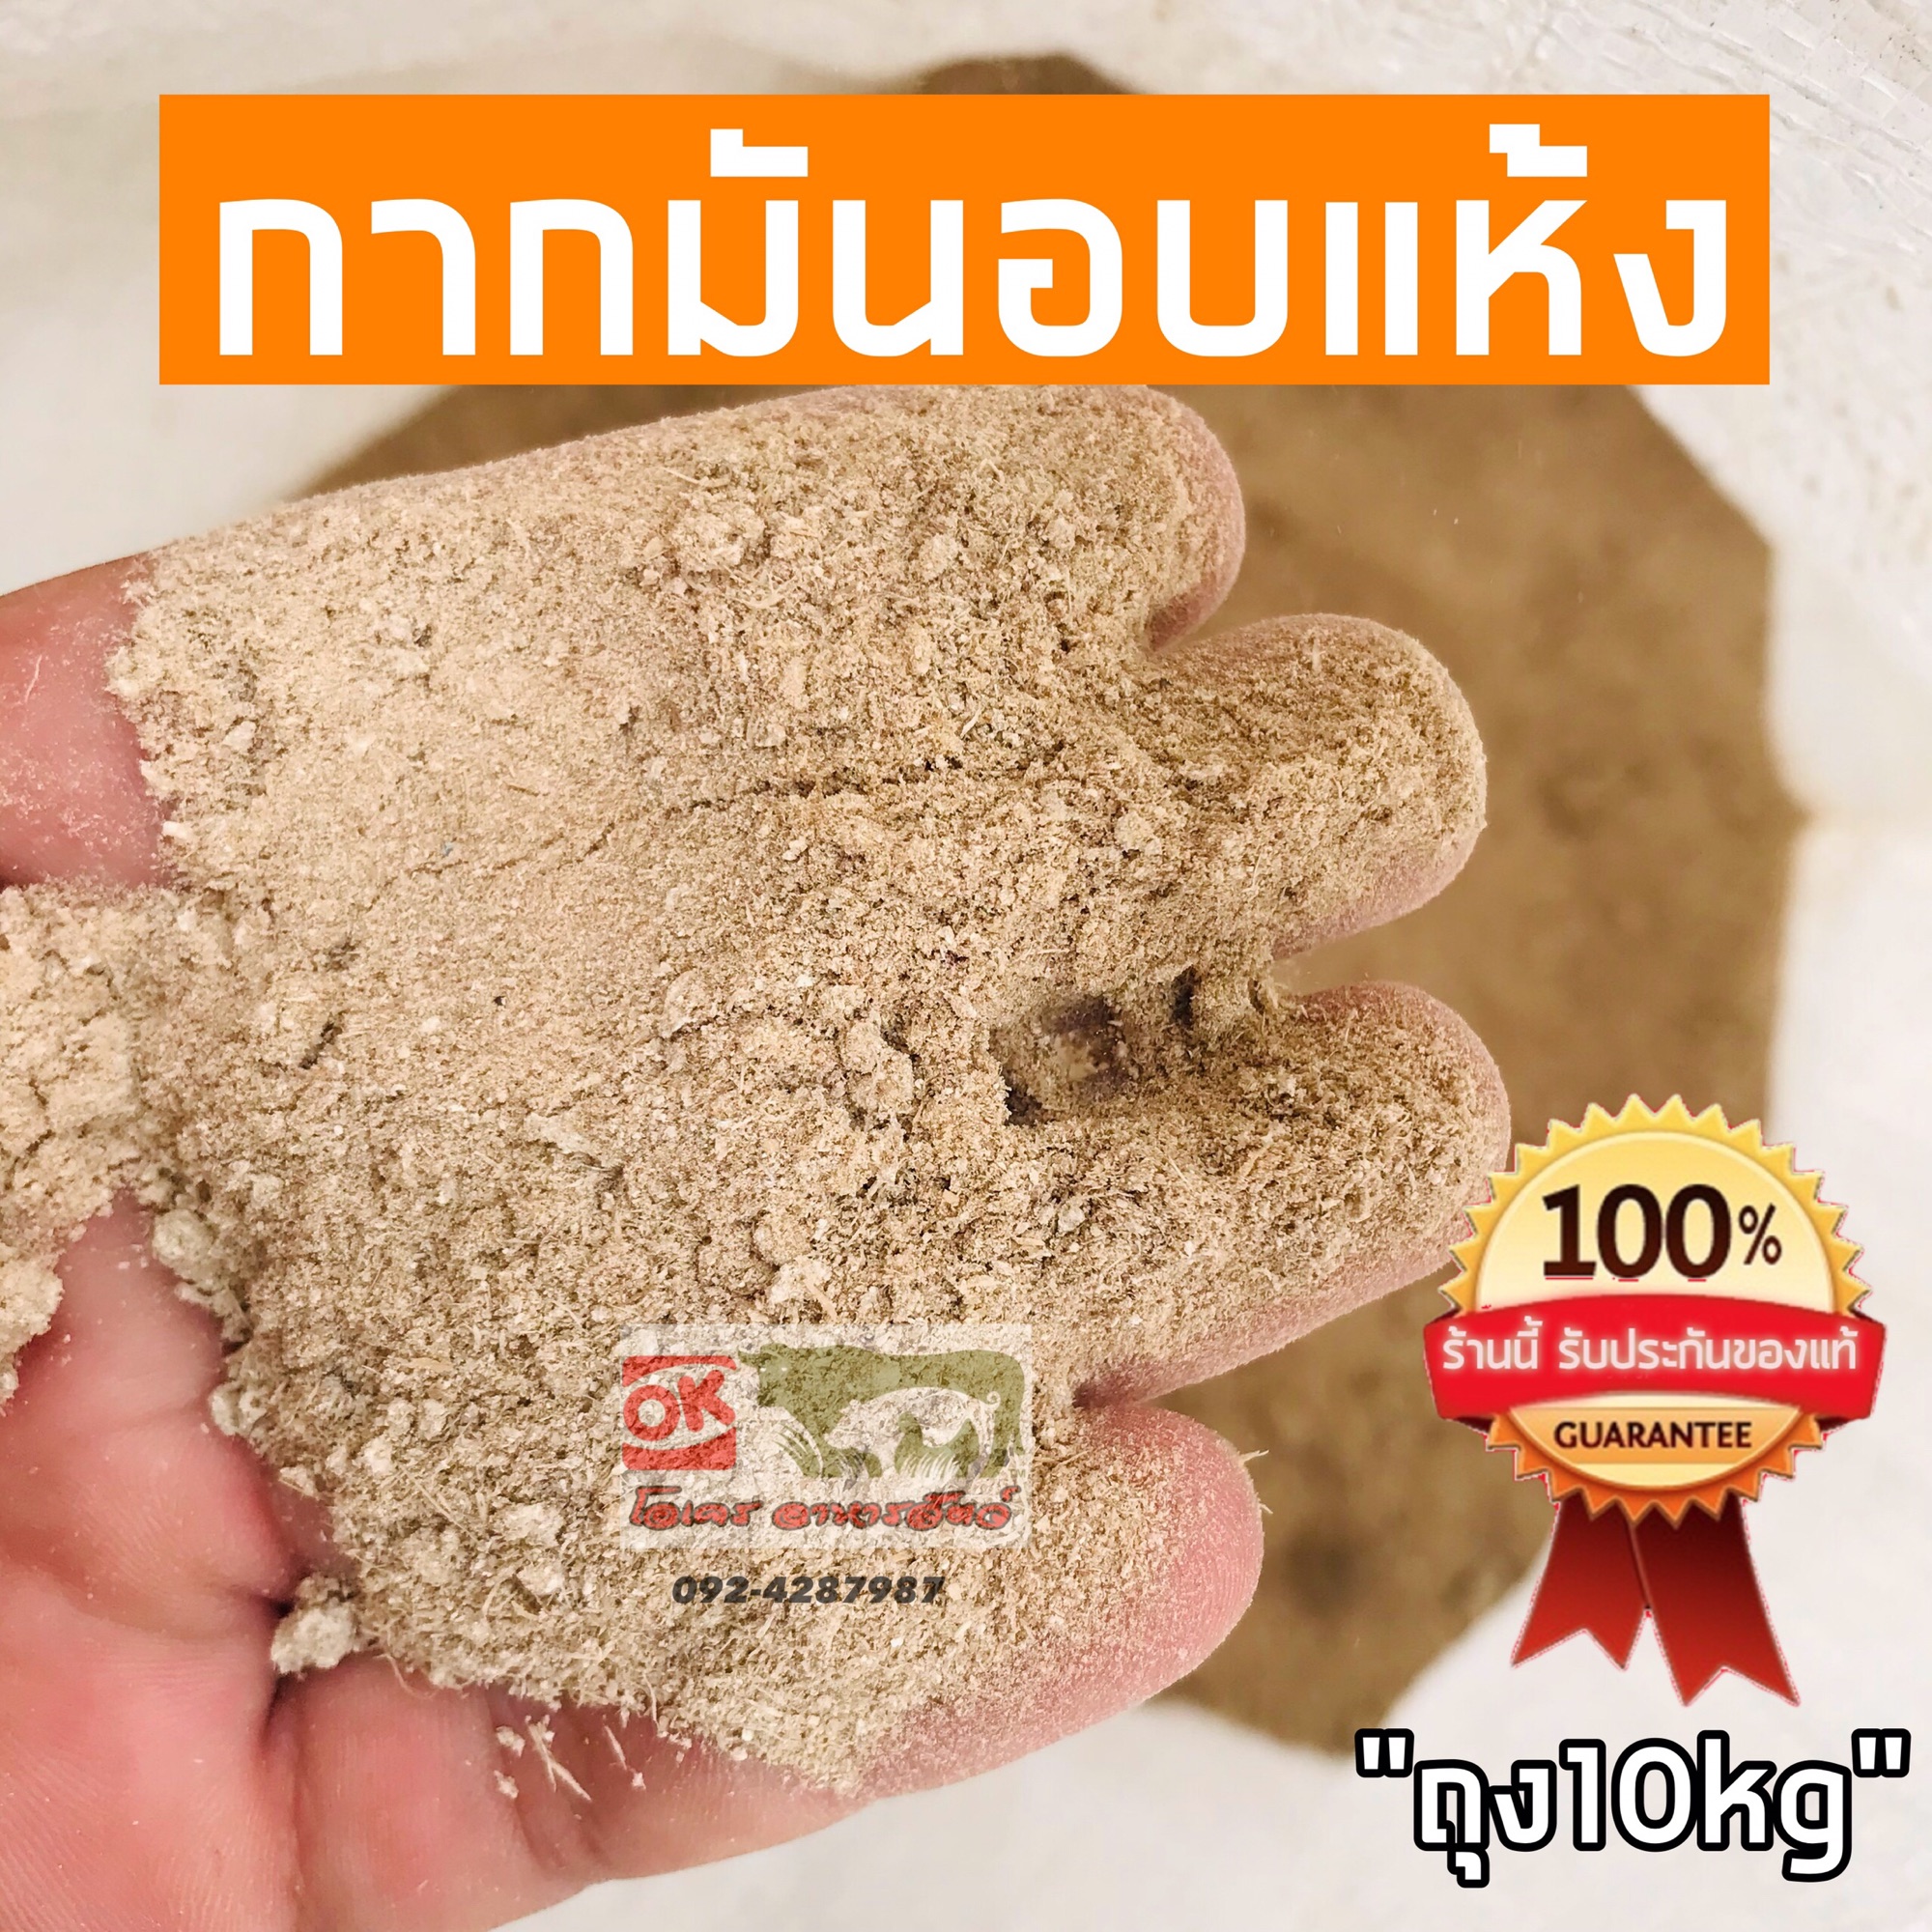 กากมันสำปะหลังอบแห้ง อาหารสัตว์ ด้วงสาคู วัว สุกร ราคาถูกสุดในไทย